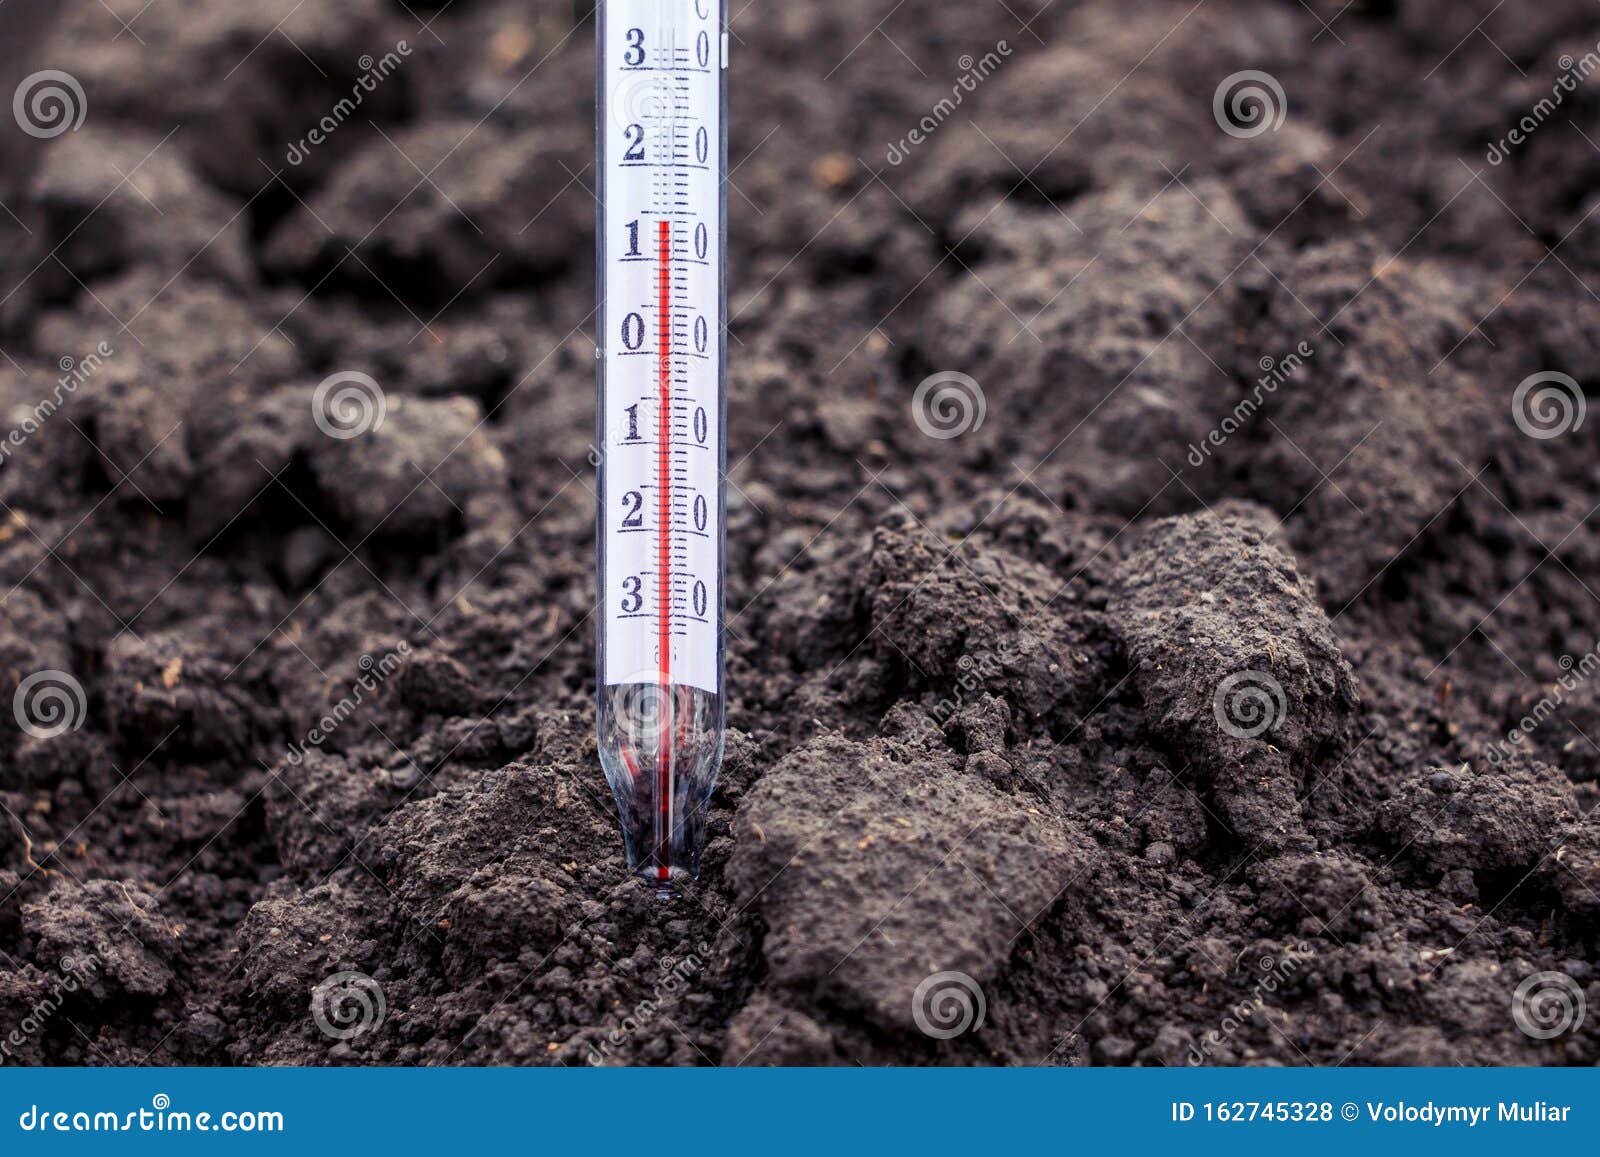 Градусник для земли. Температура почвы. Термометр почвенный. Измерение температуры почвы. Термометр для почвы.